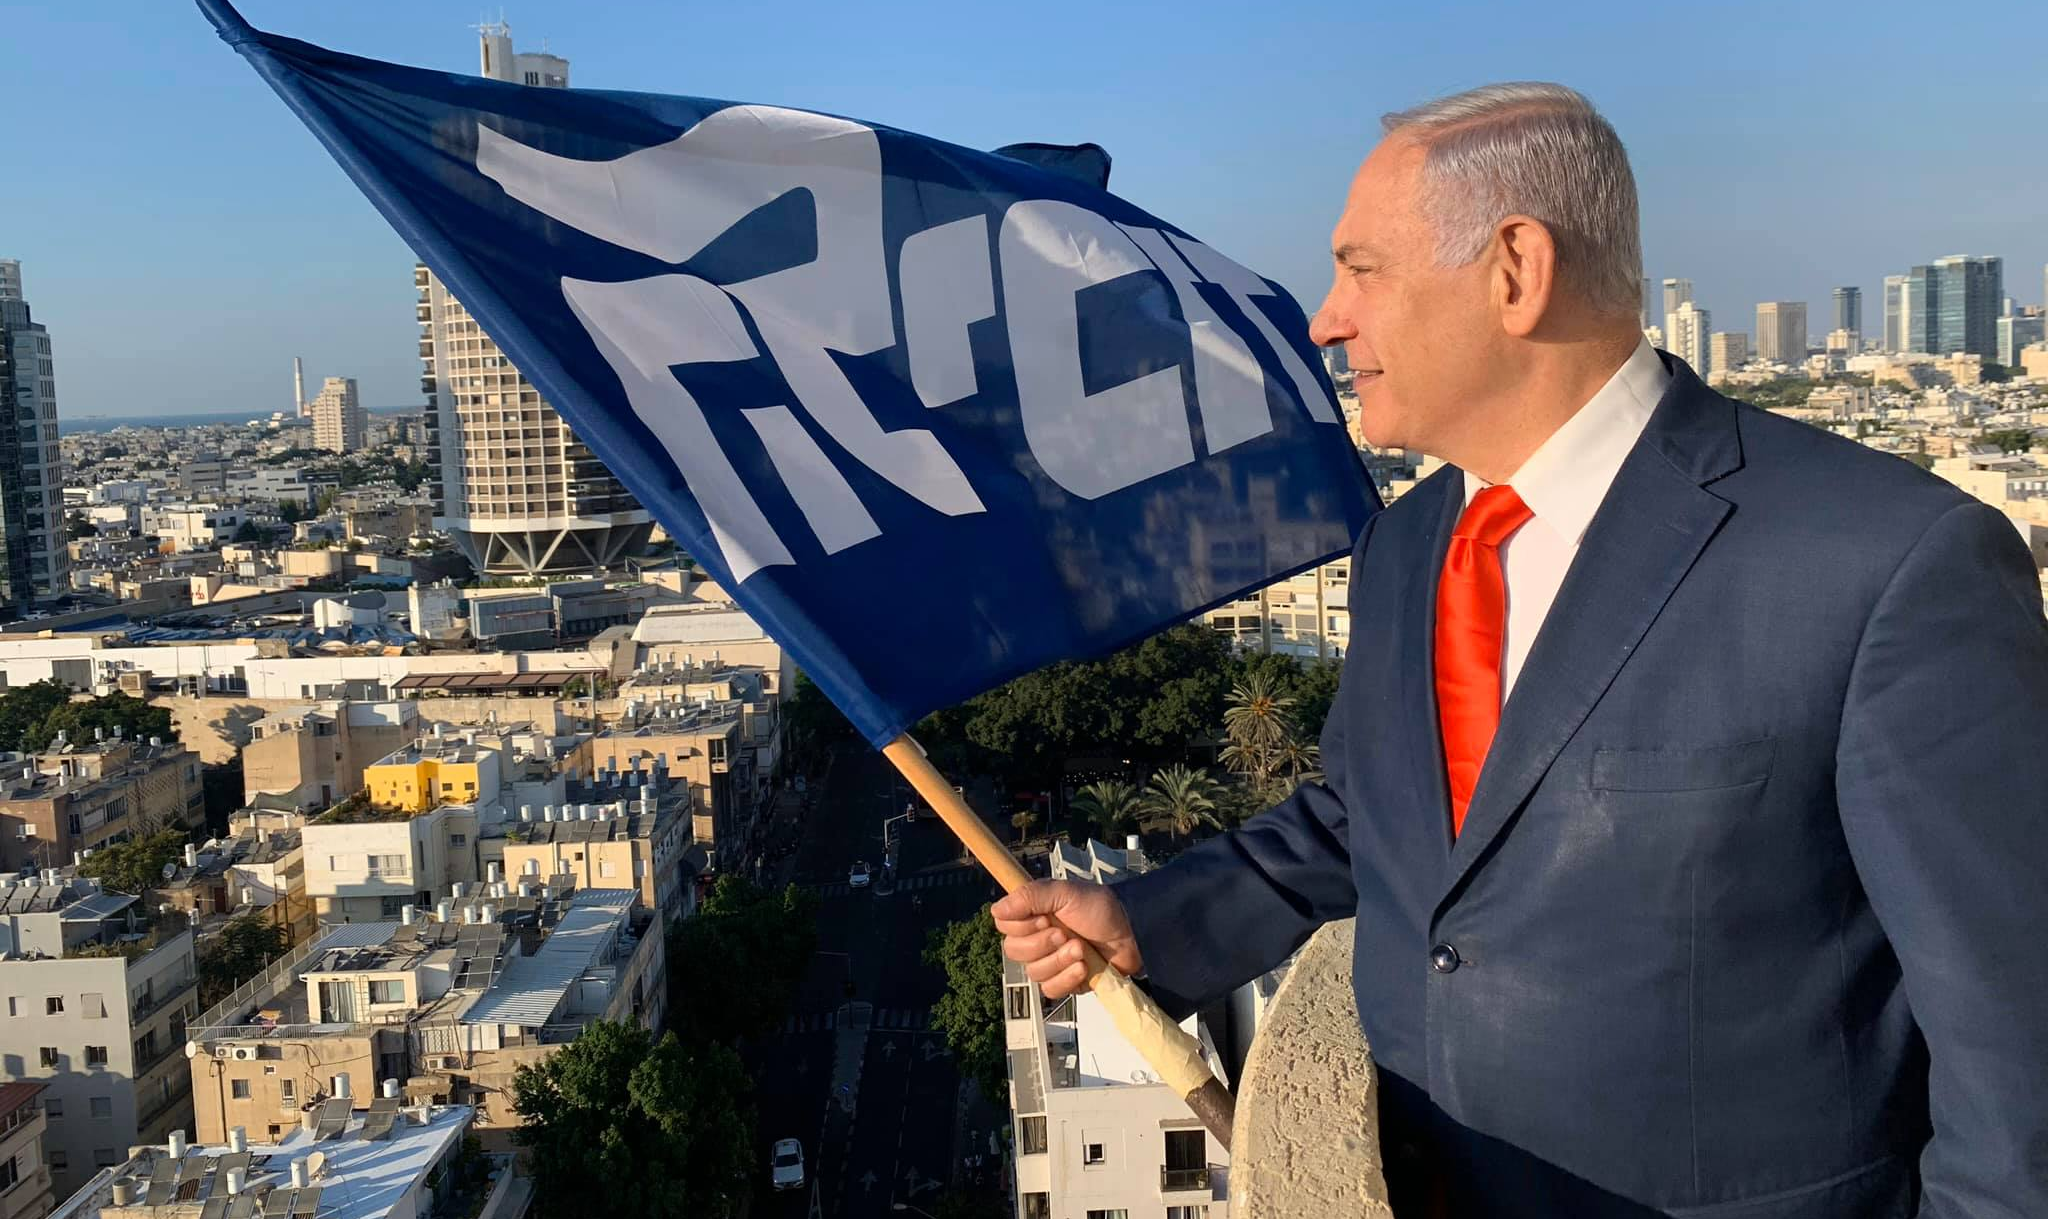 Fracasso do atual premiê de extrema direita abre caminho para opositor Benny Gantz colocar fim aos 10 anos de Netanyahu